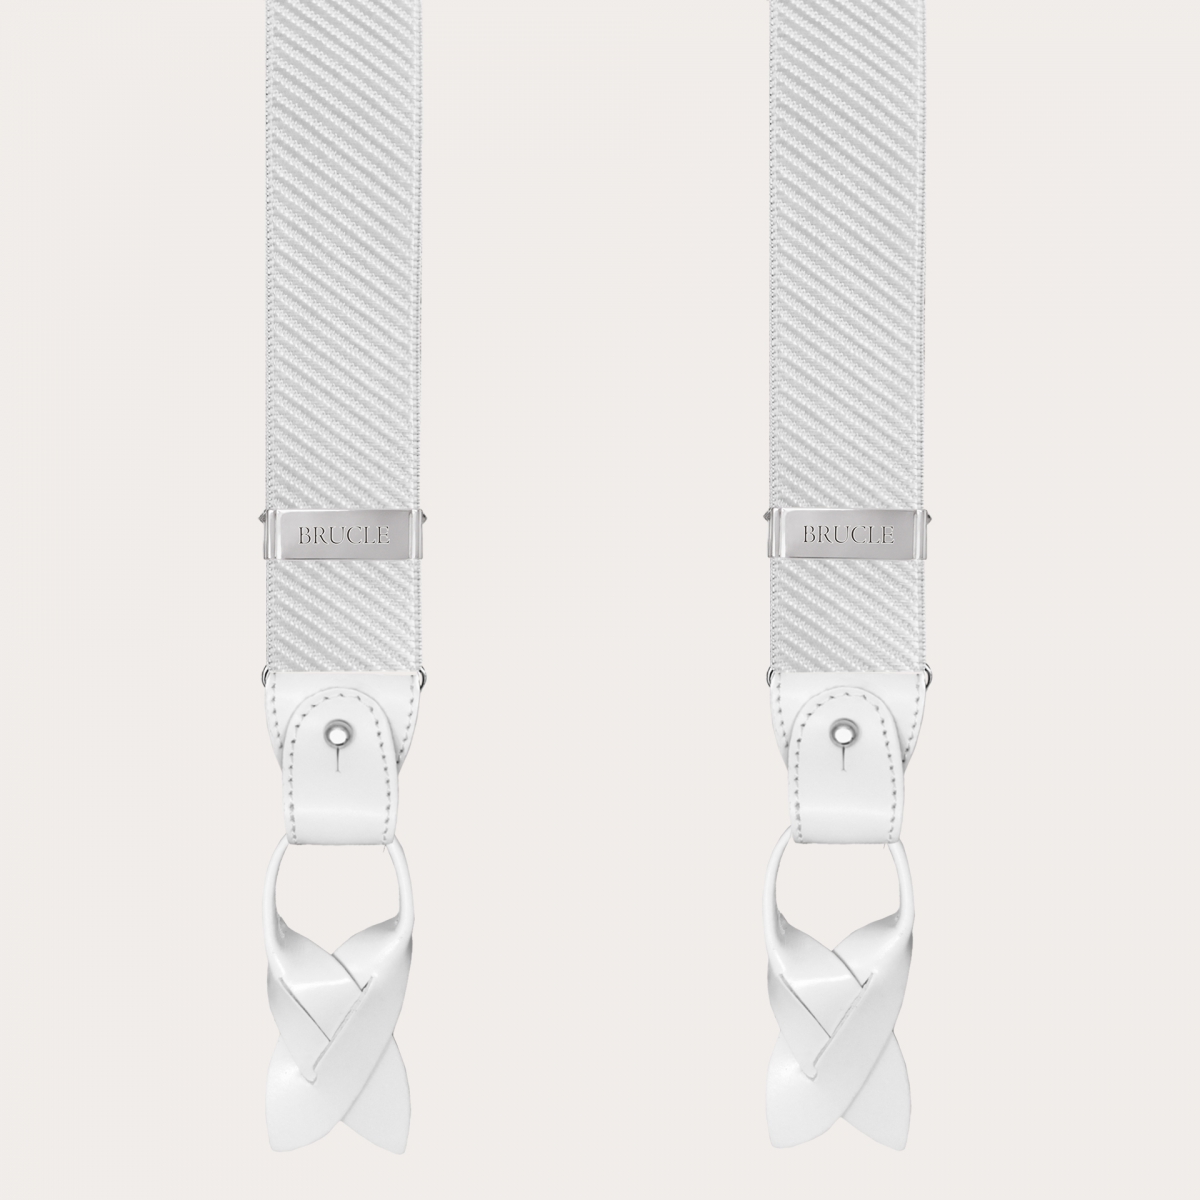 Bretelle cerimoniali bianche lucide a righe doppio uso